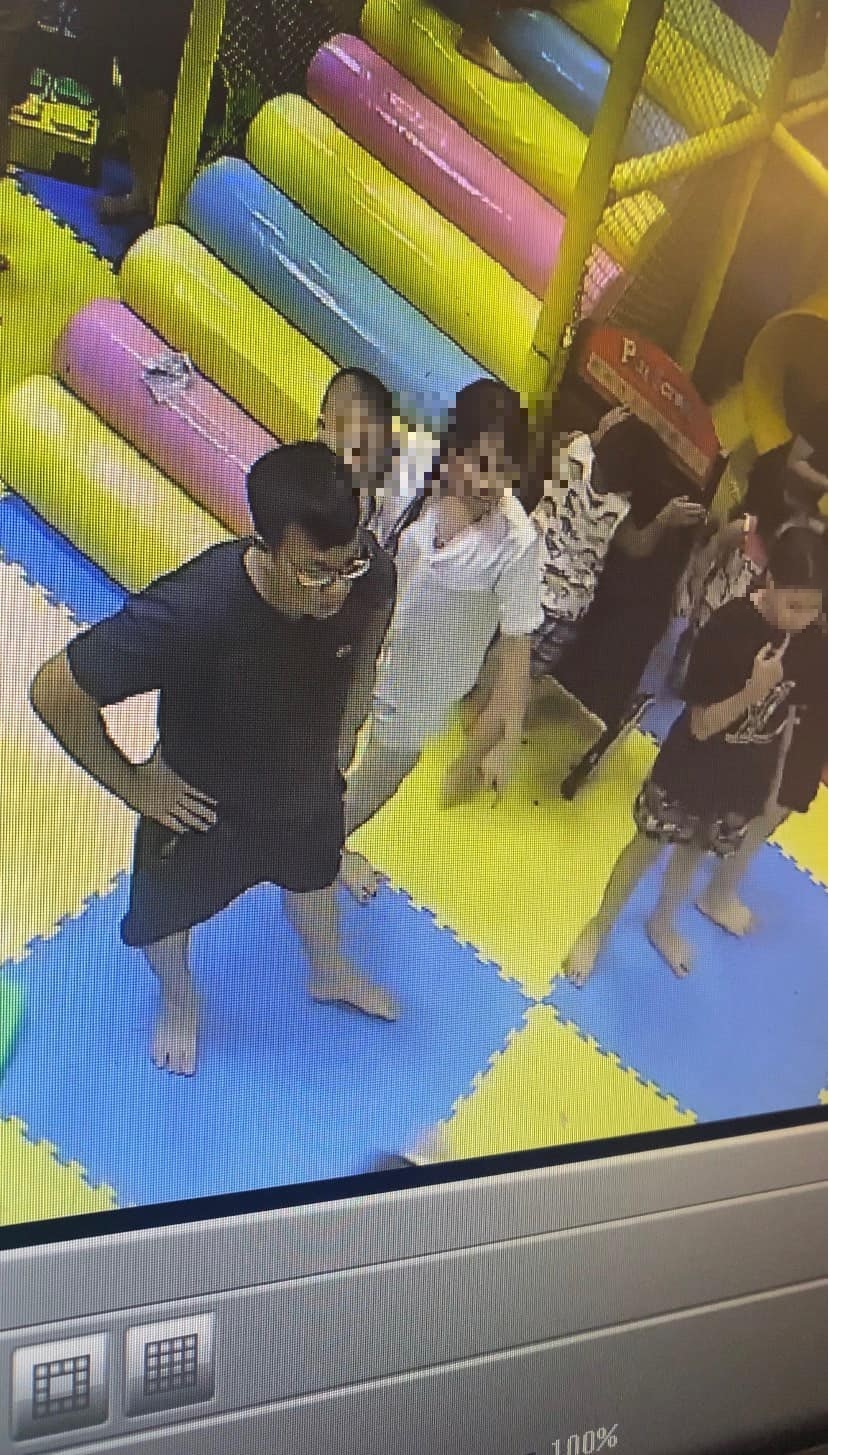 Phẫn nộ người đàn ông đánh bé gái 4 tuổi trong khu vui chơi ở Hà Nội: Bố cháu bé đã  gửi clip rõ mặt cho công an